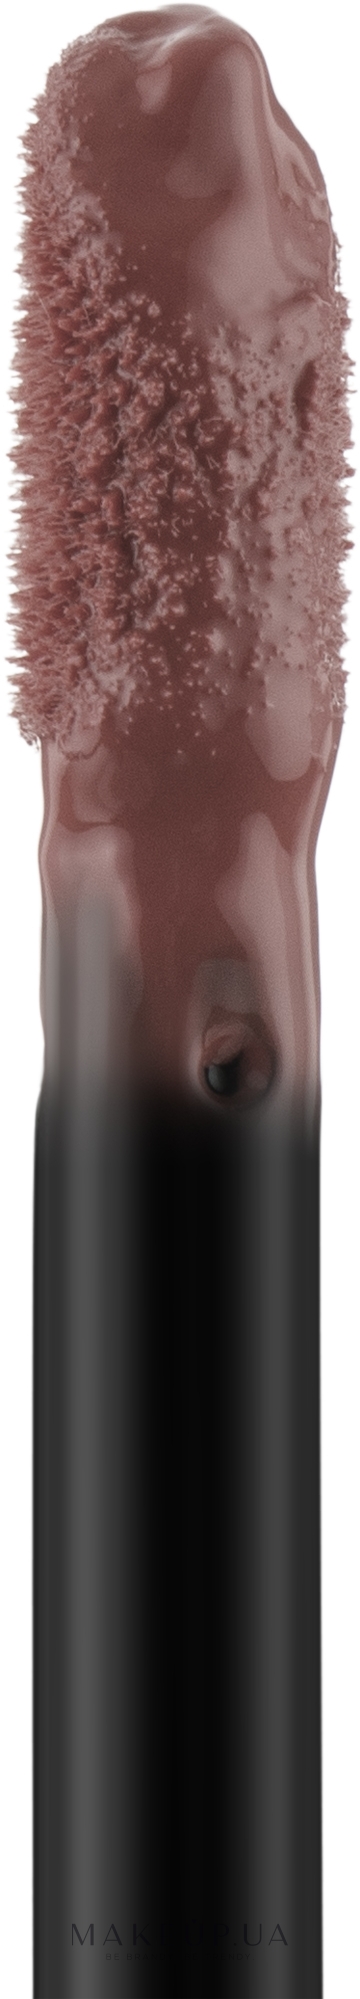 Стойкая жидкая помада для губ - Malu Wilz Super Stay Lip Fluid — фото 01 - Purple Nude